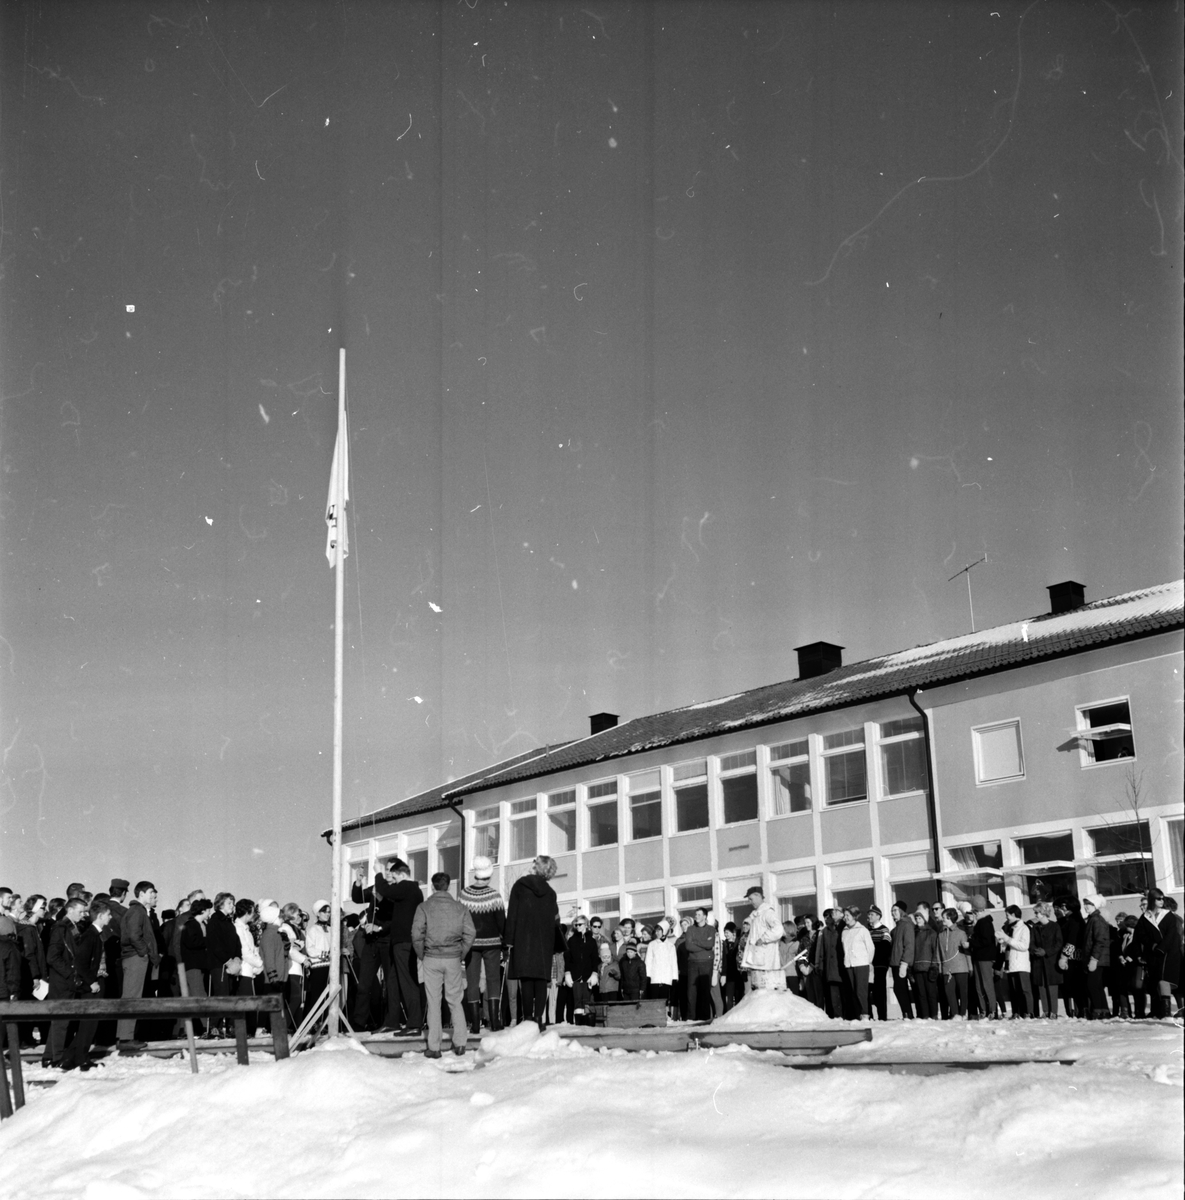 Folkhögskolan,
"Skololympiad"
20 Febr 1965